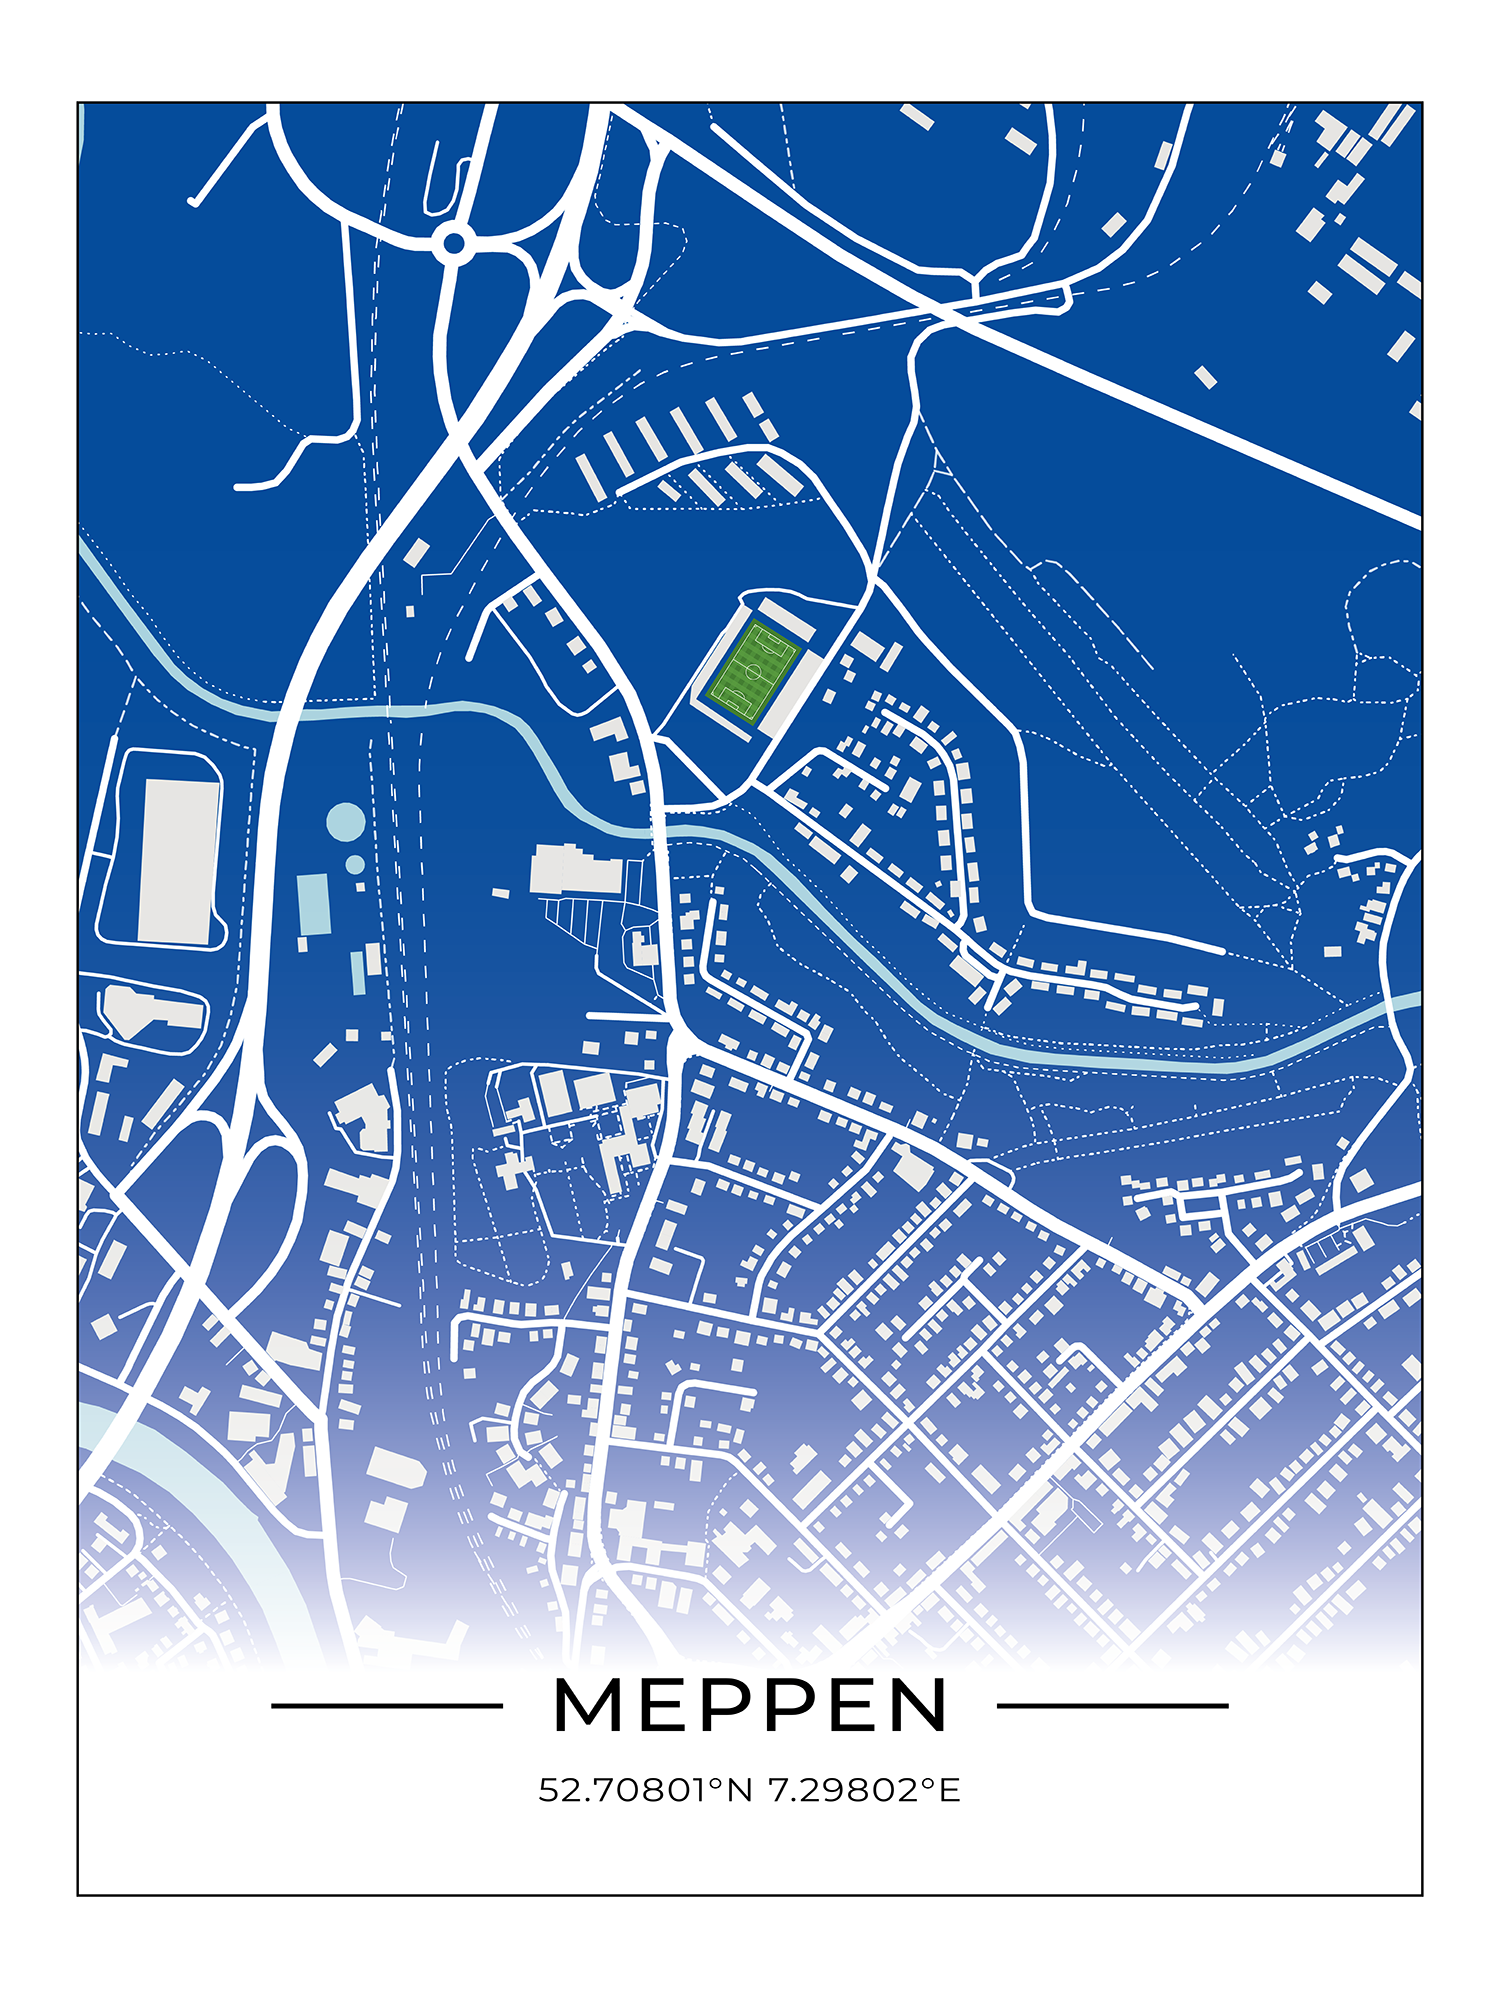 Stadion Poster Meppen, Fußball Karte, Fußball Poster